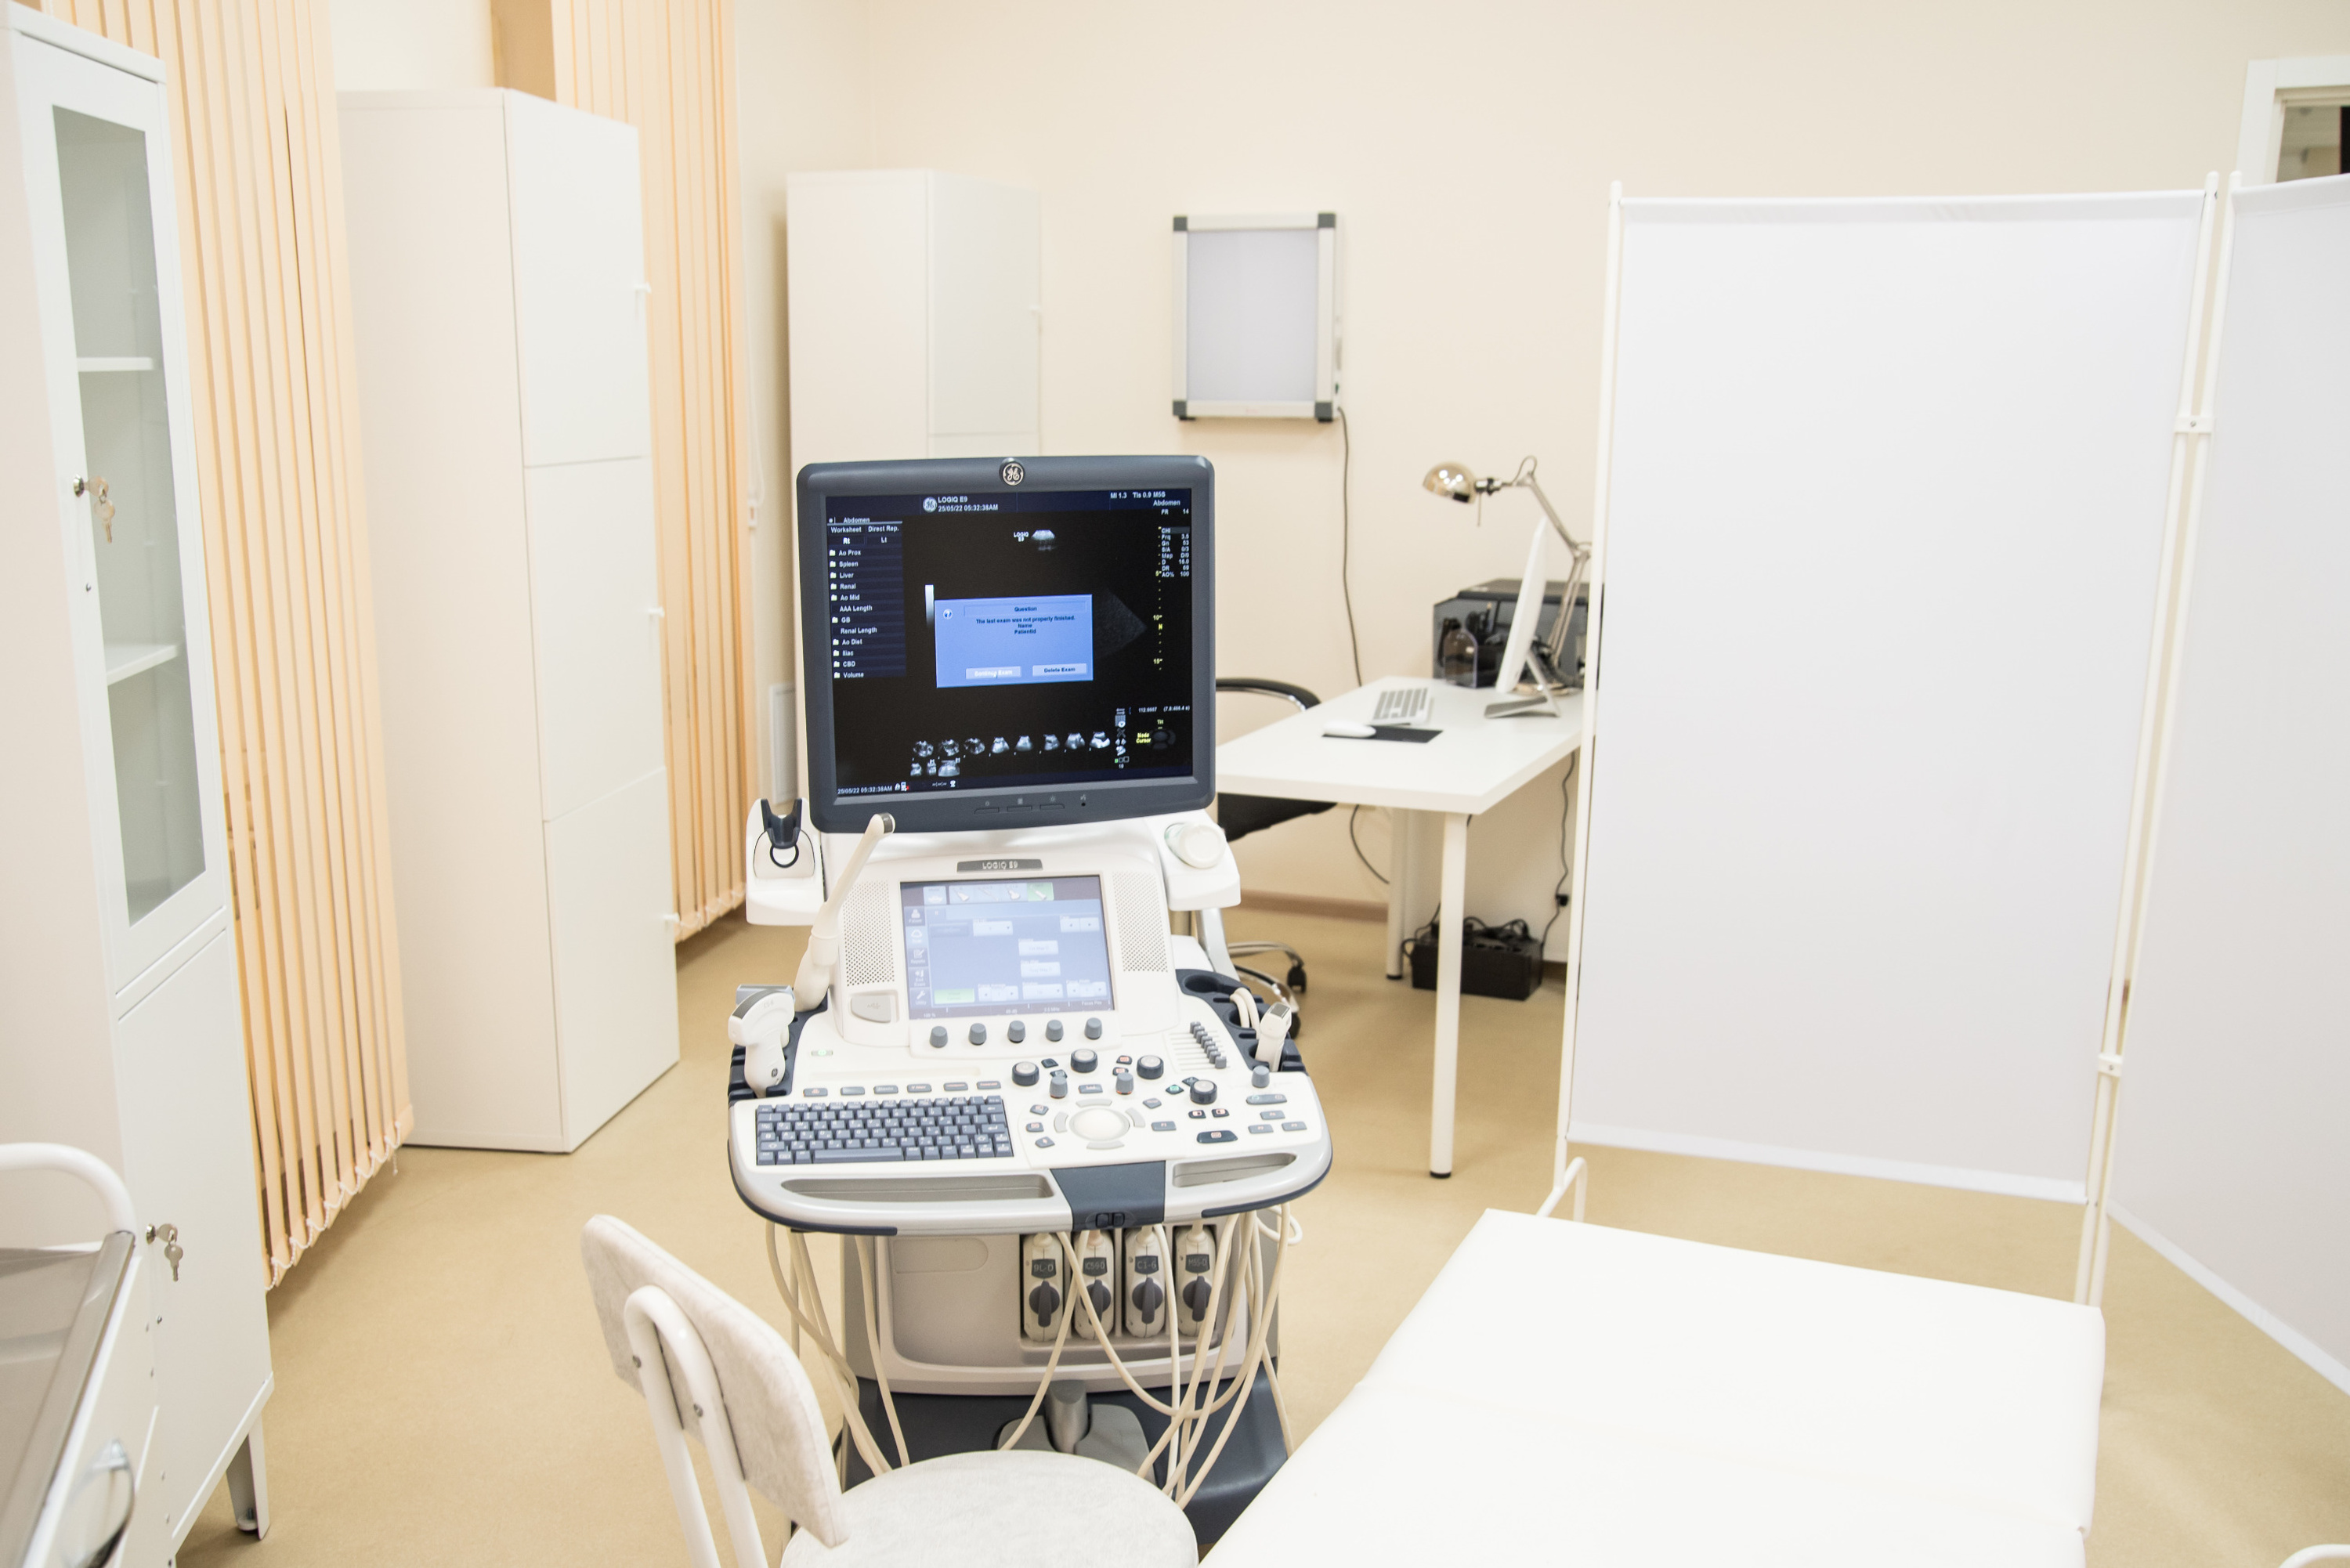 В медицинском центре — самое современное оборудование, в том числе для УЗИ-диагностики